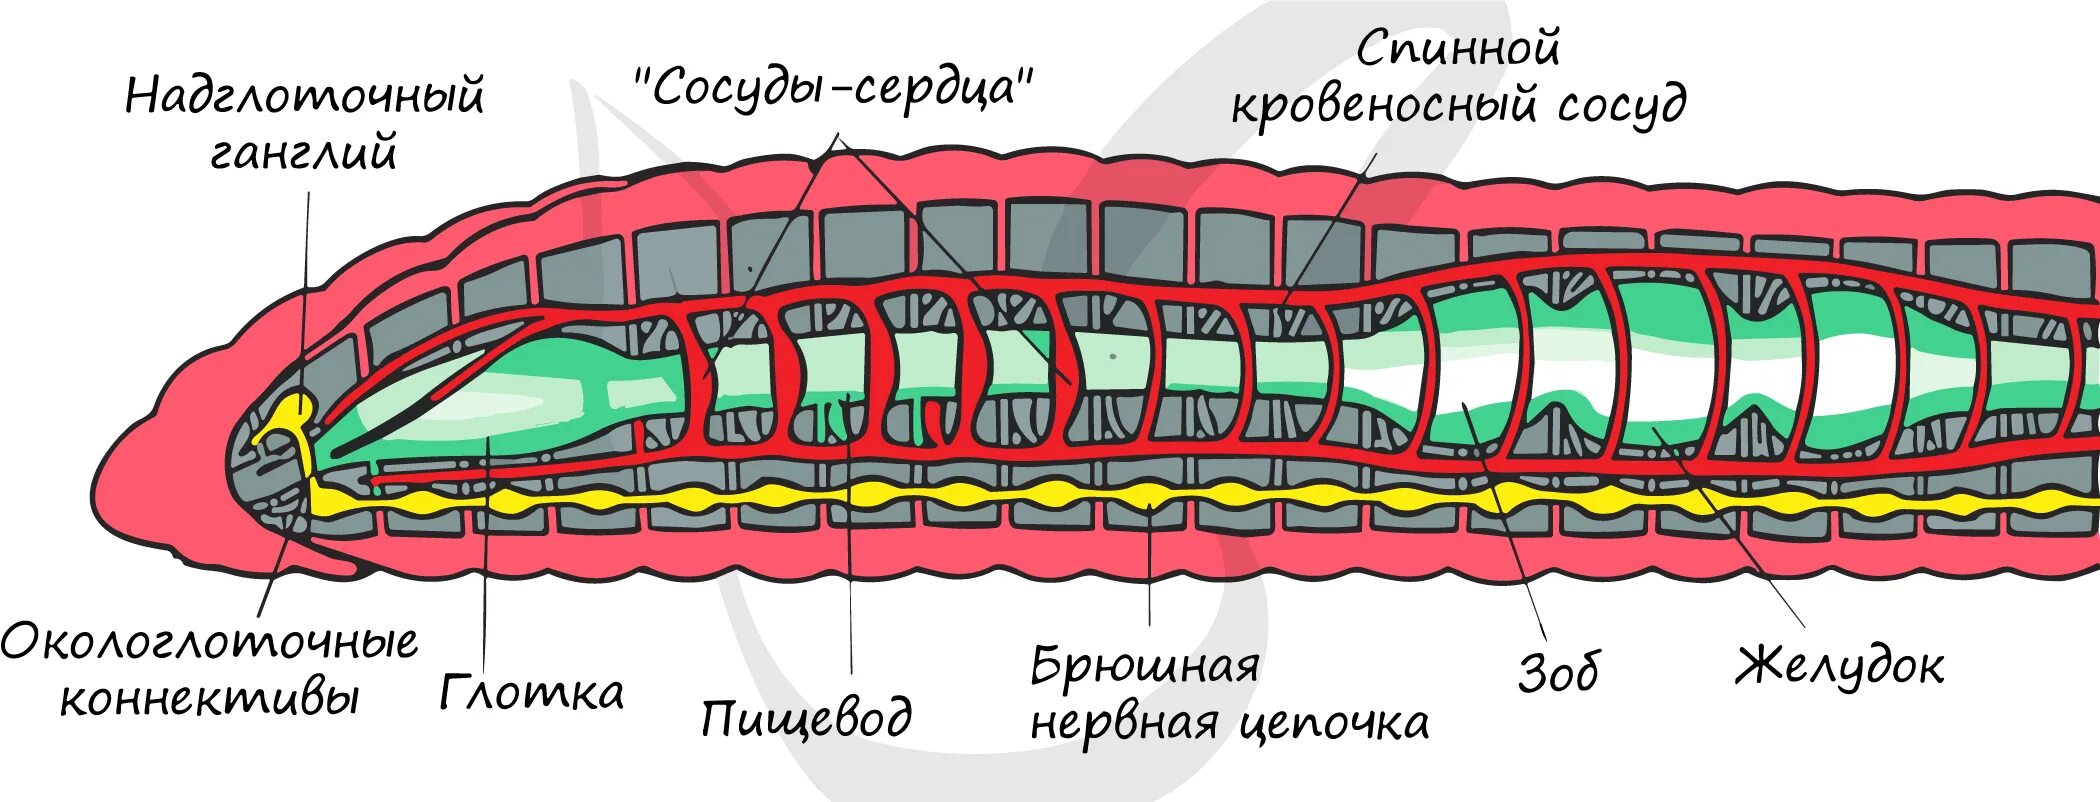 Брюшная нервная цепочка функции. Тип кольчатые черви строение тела. Внутреннее строение кольчатого червя рисунок. Кольчатые черви схема строения. Схема продольного разреза дождевого червя.